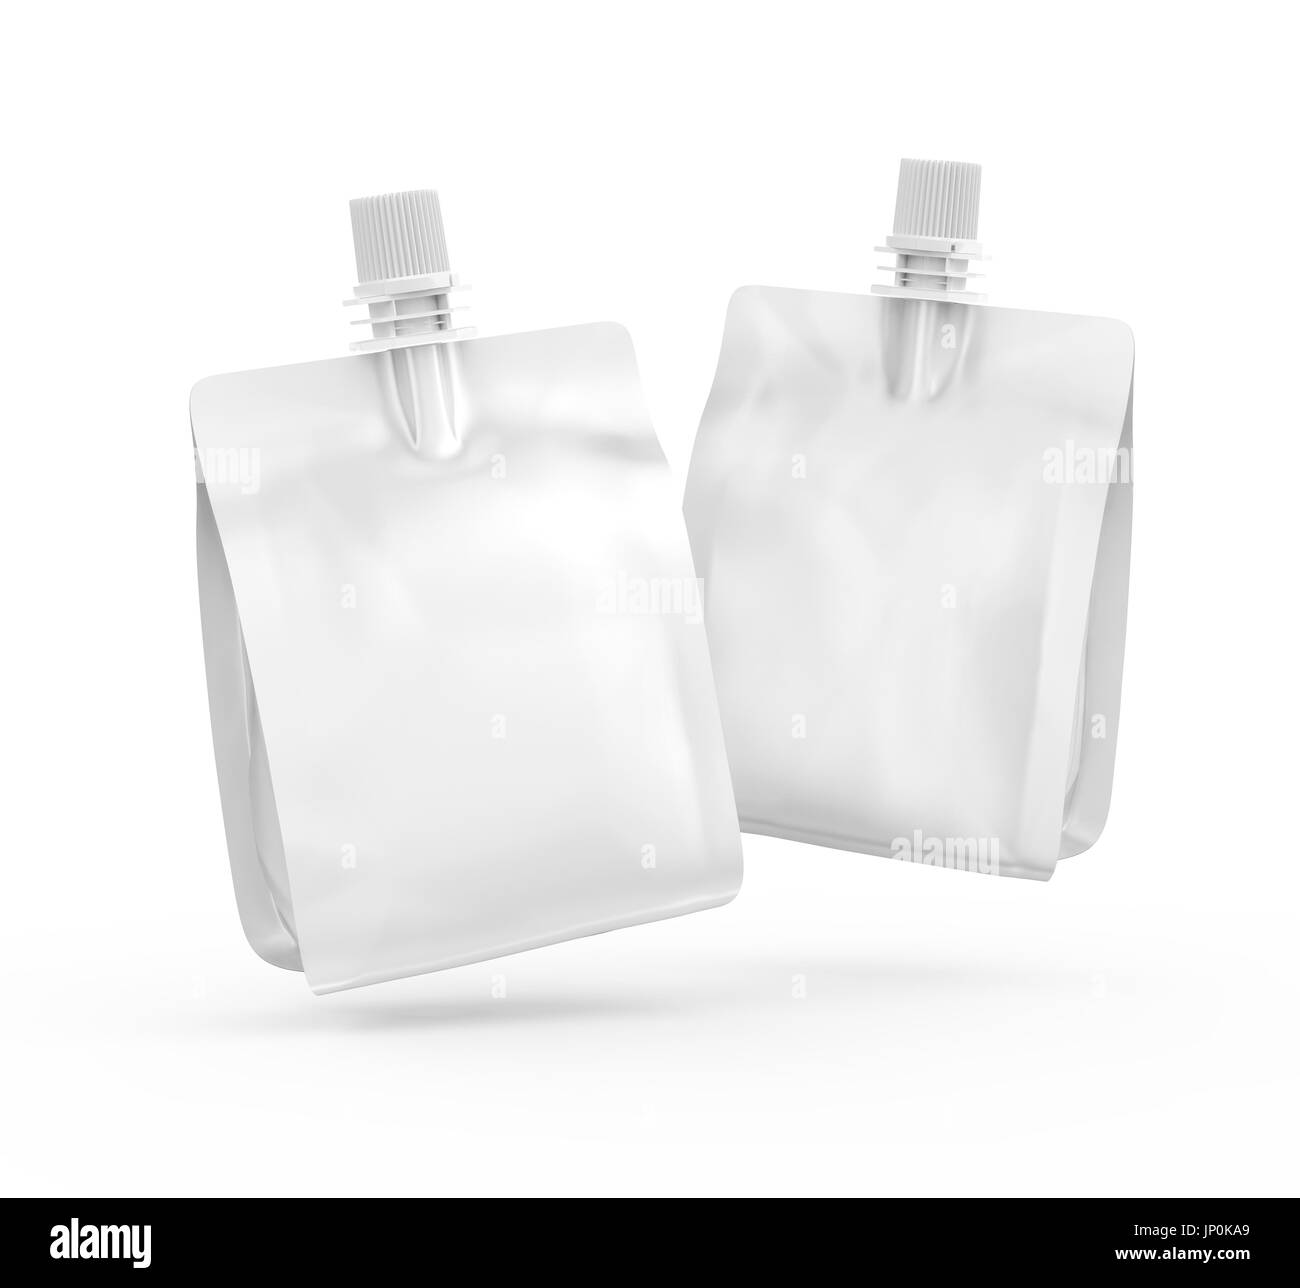 Folienbeutel für Getränke oder Essen, leere Folie Tasche Modell für Getränke Design in 3D-Rendering, zwei in der Luft schweben Stockfoto